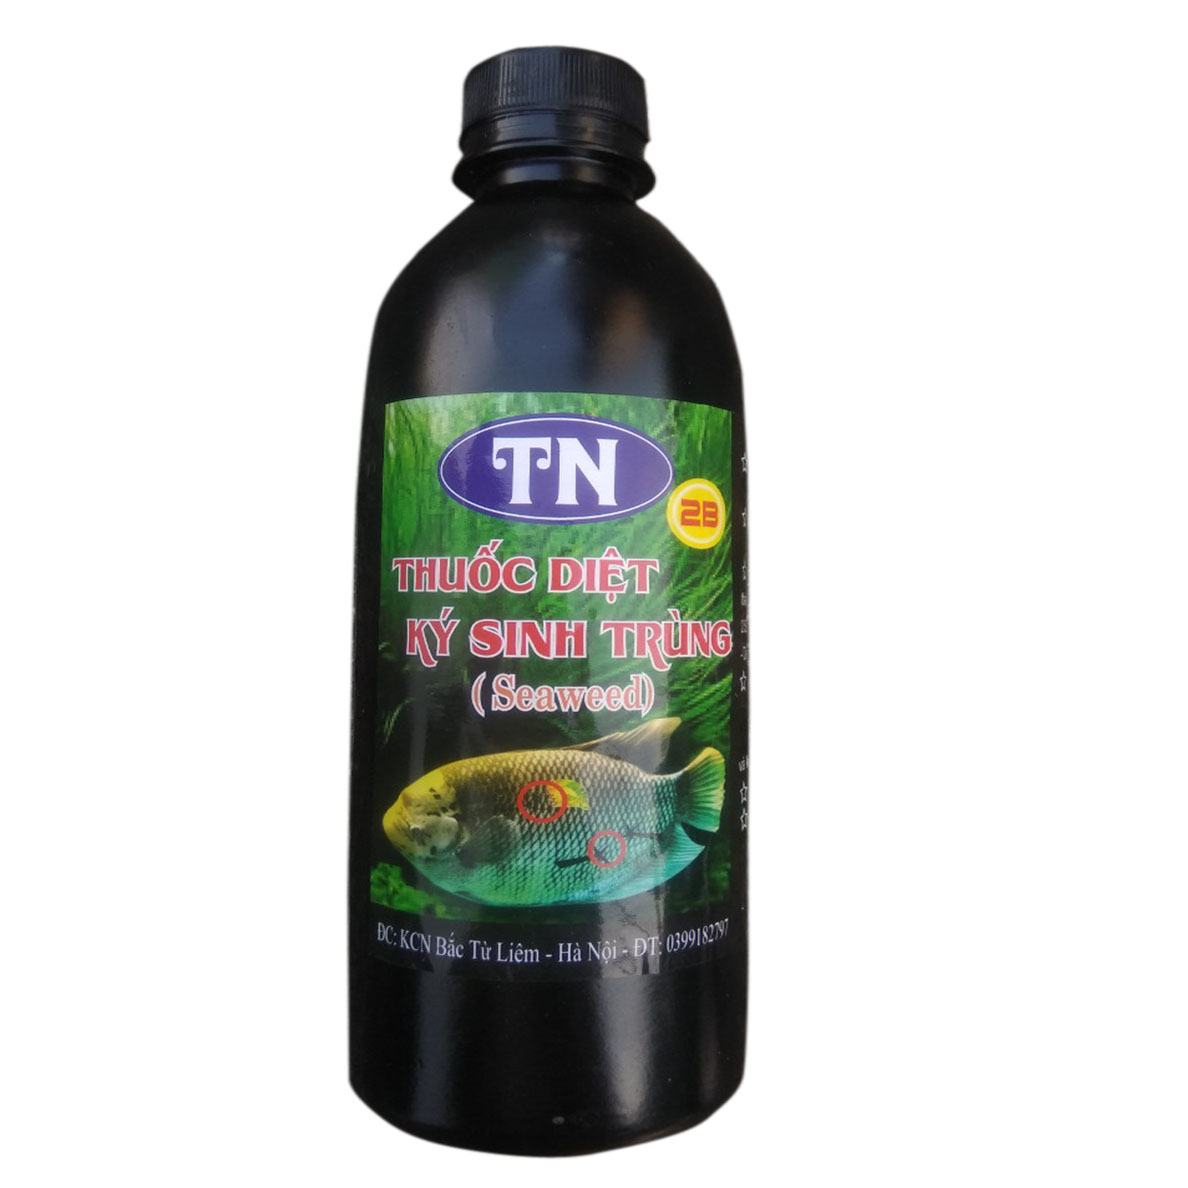 Thuốc TN 2B Seaweed chai lớn - Thuốc Diệt Ký Sinh Trùng Ở Cá & Diệt Khuẩn, Diệt Tảo Trong Nước 500ml